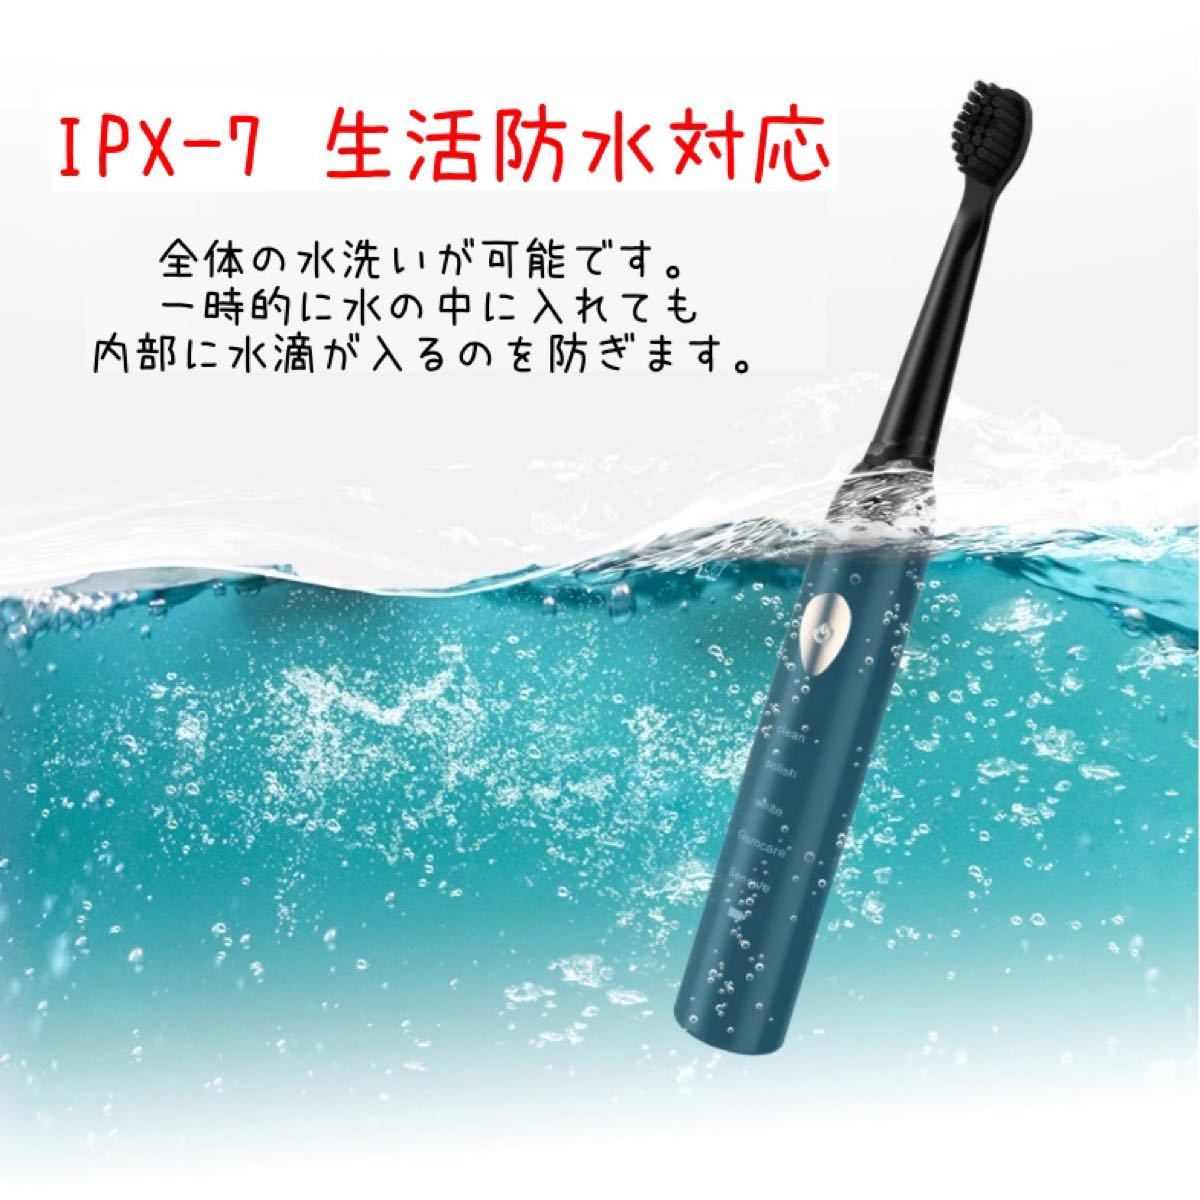 格安 電動歯ブラシセット ホワイト 5段階 モード切替 USB充電 ブラシヘッド 4本付き 静音 高性能 IPX7防水 即日発送